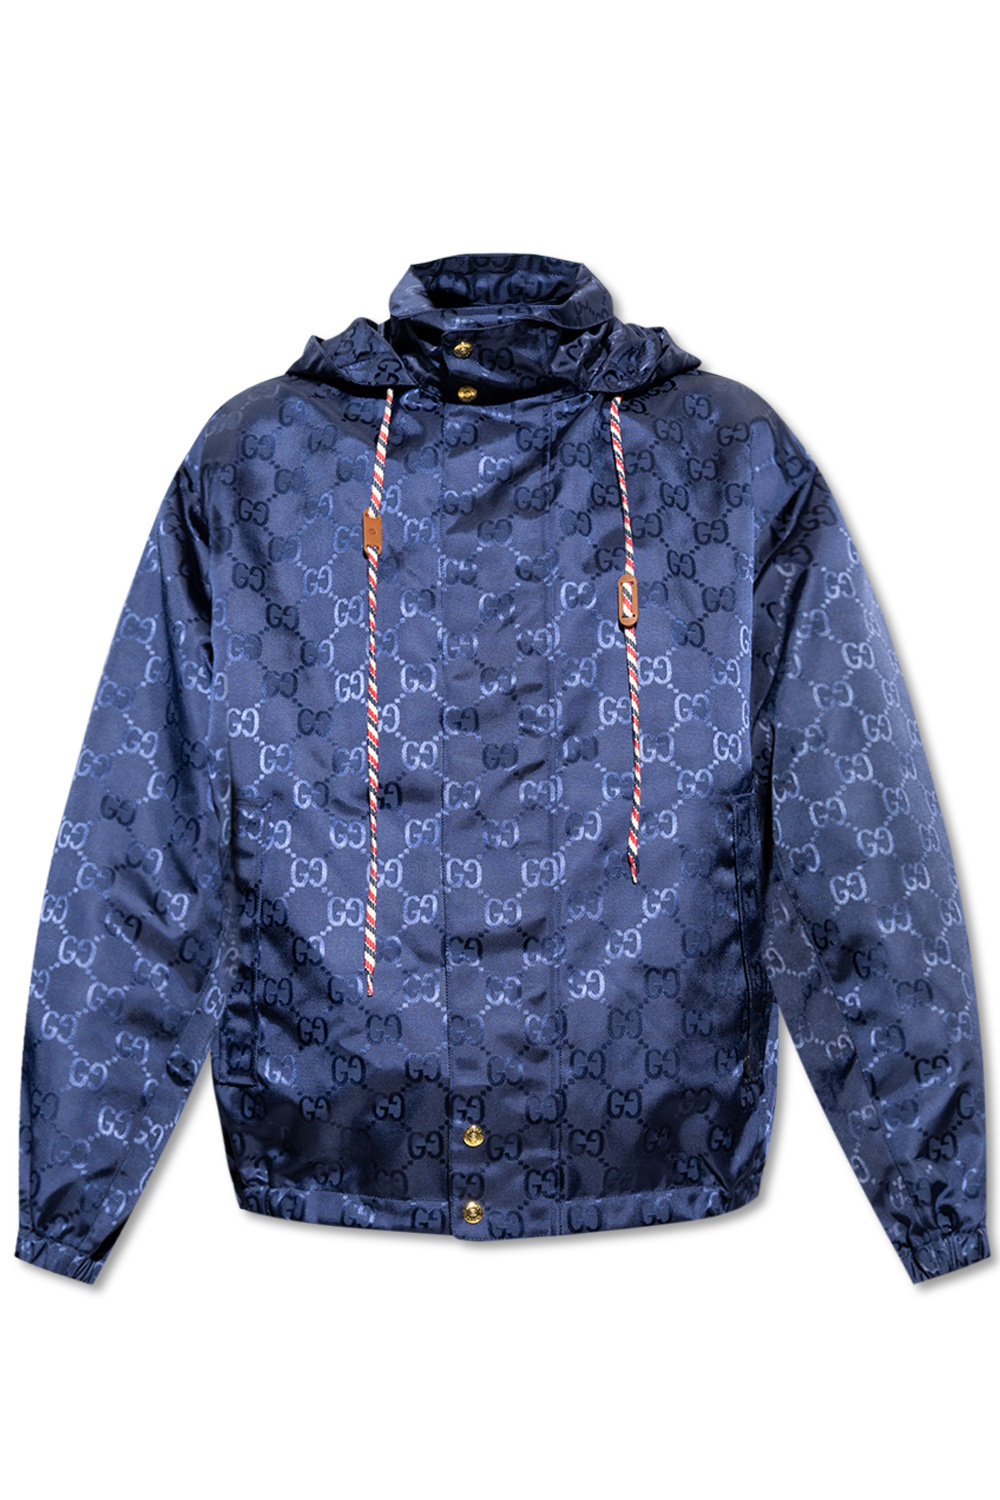 Gucci, Jackets & Coats, Mens Gucci Monogram Windbreaker Jacket